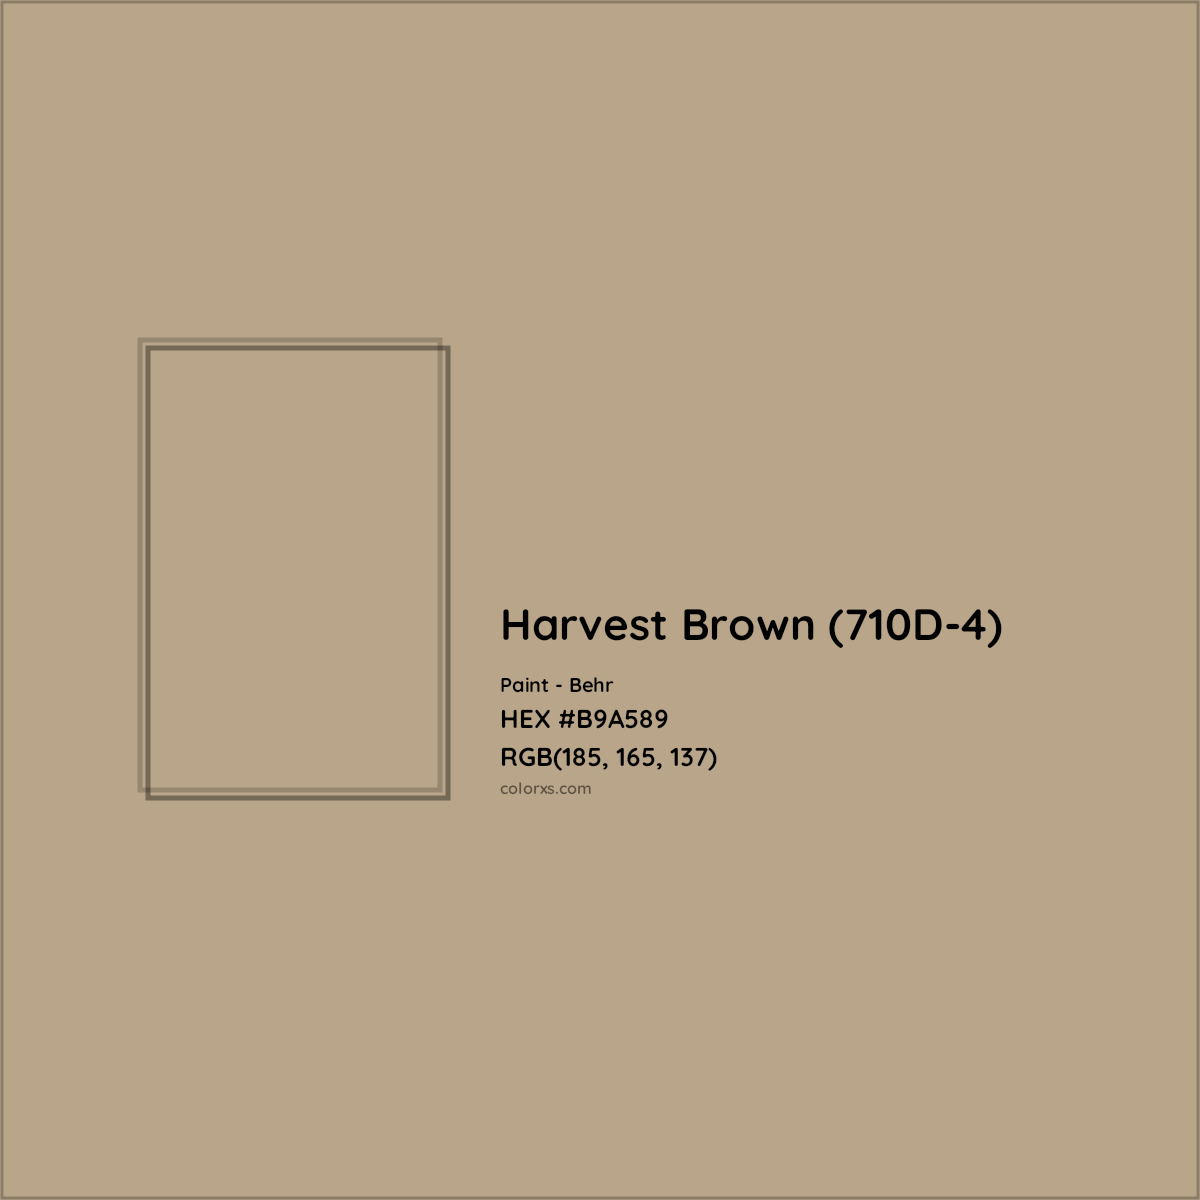 HEX #B9A589 Harvest Brown (710D-4) Paint Behr - Color Code